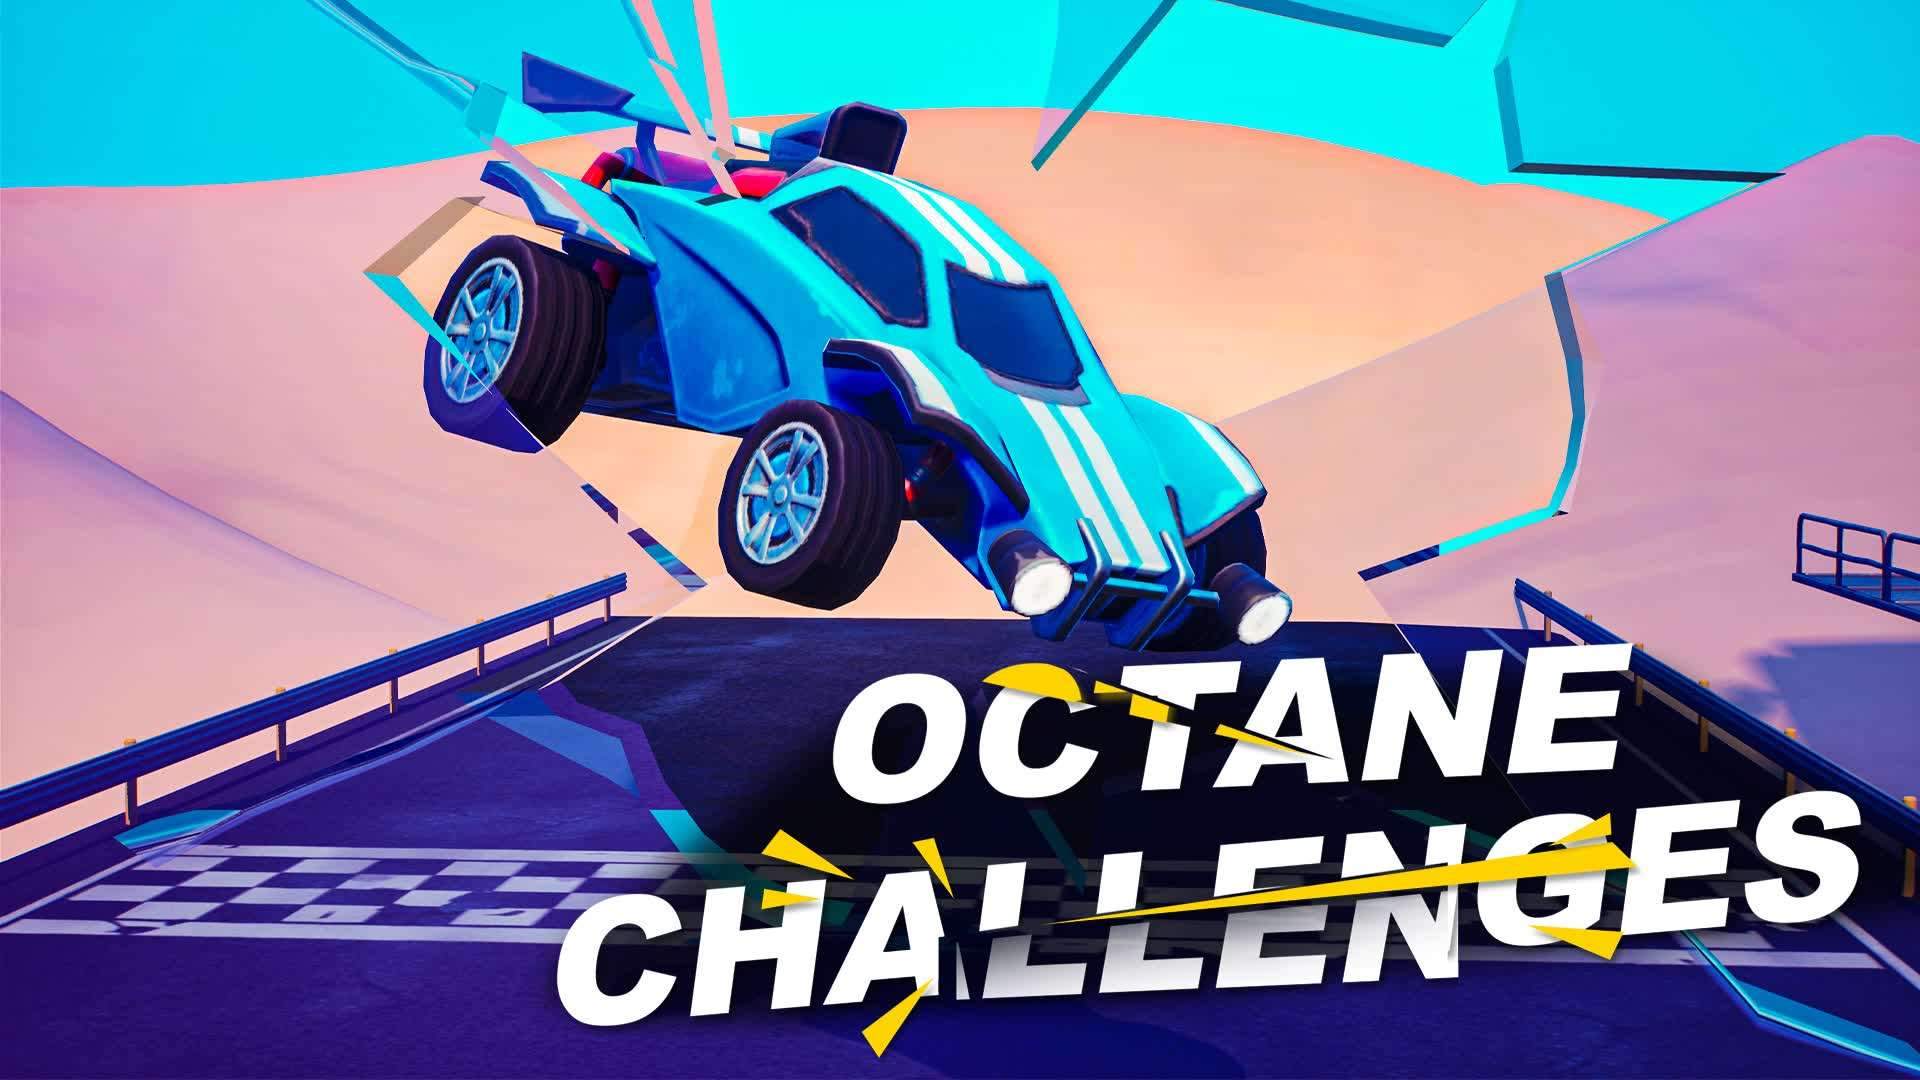 تحدي روكيت ليق | Rocket league challenge